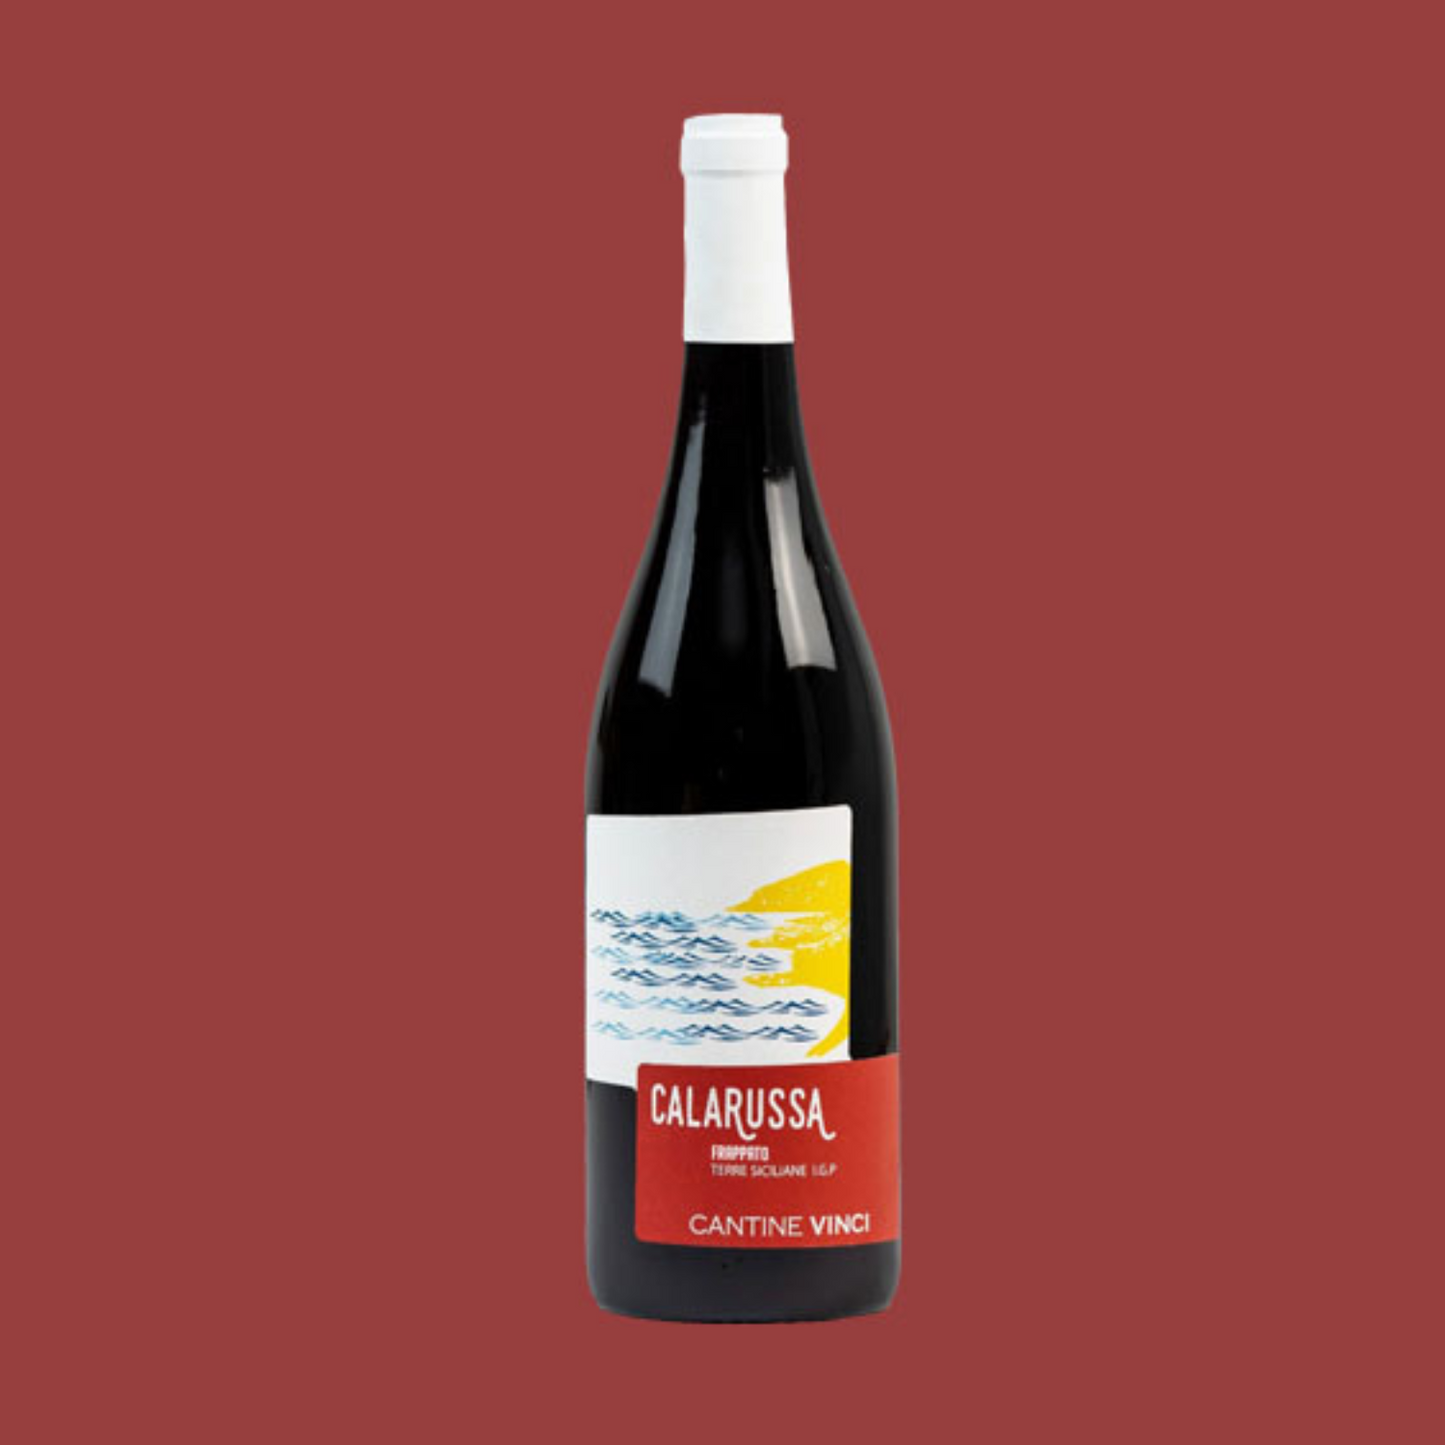 6 Bouteilles de Calarussa Vin Rouge Igt de Sicile - Cantine Vinci